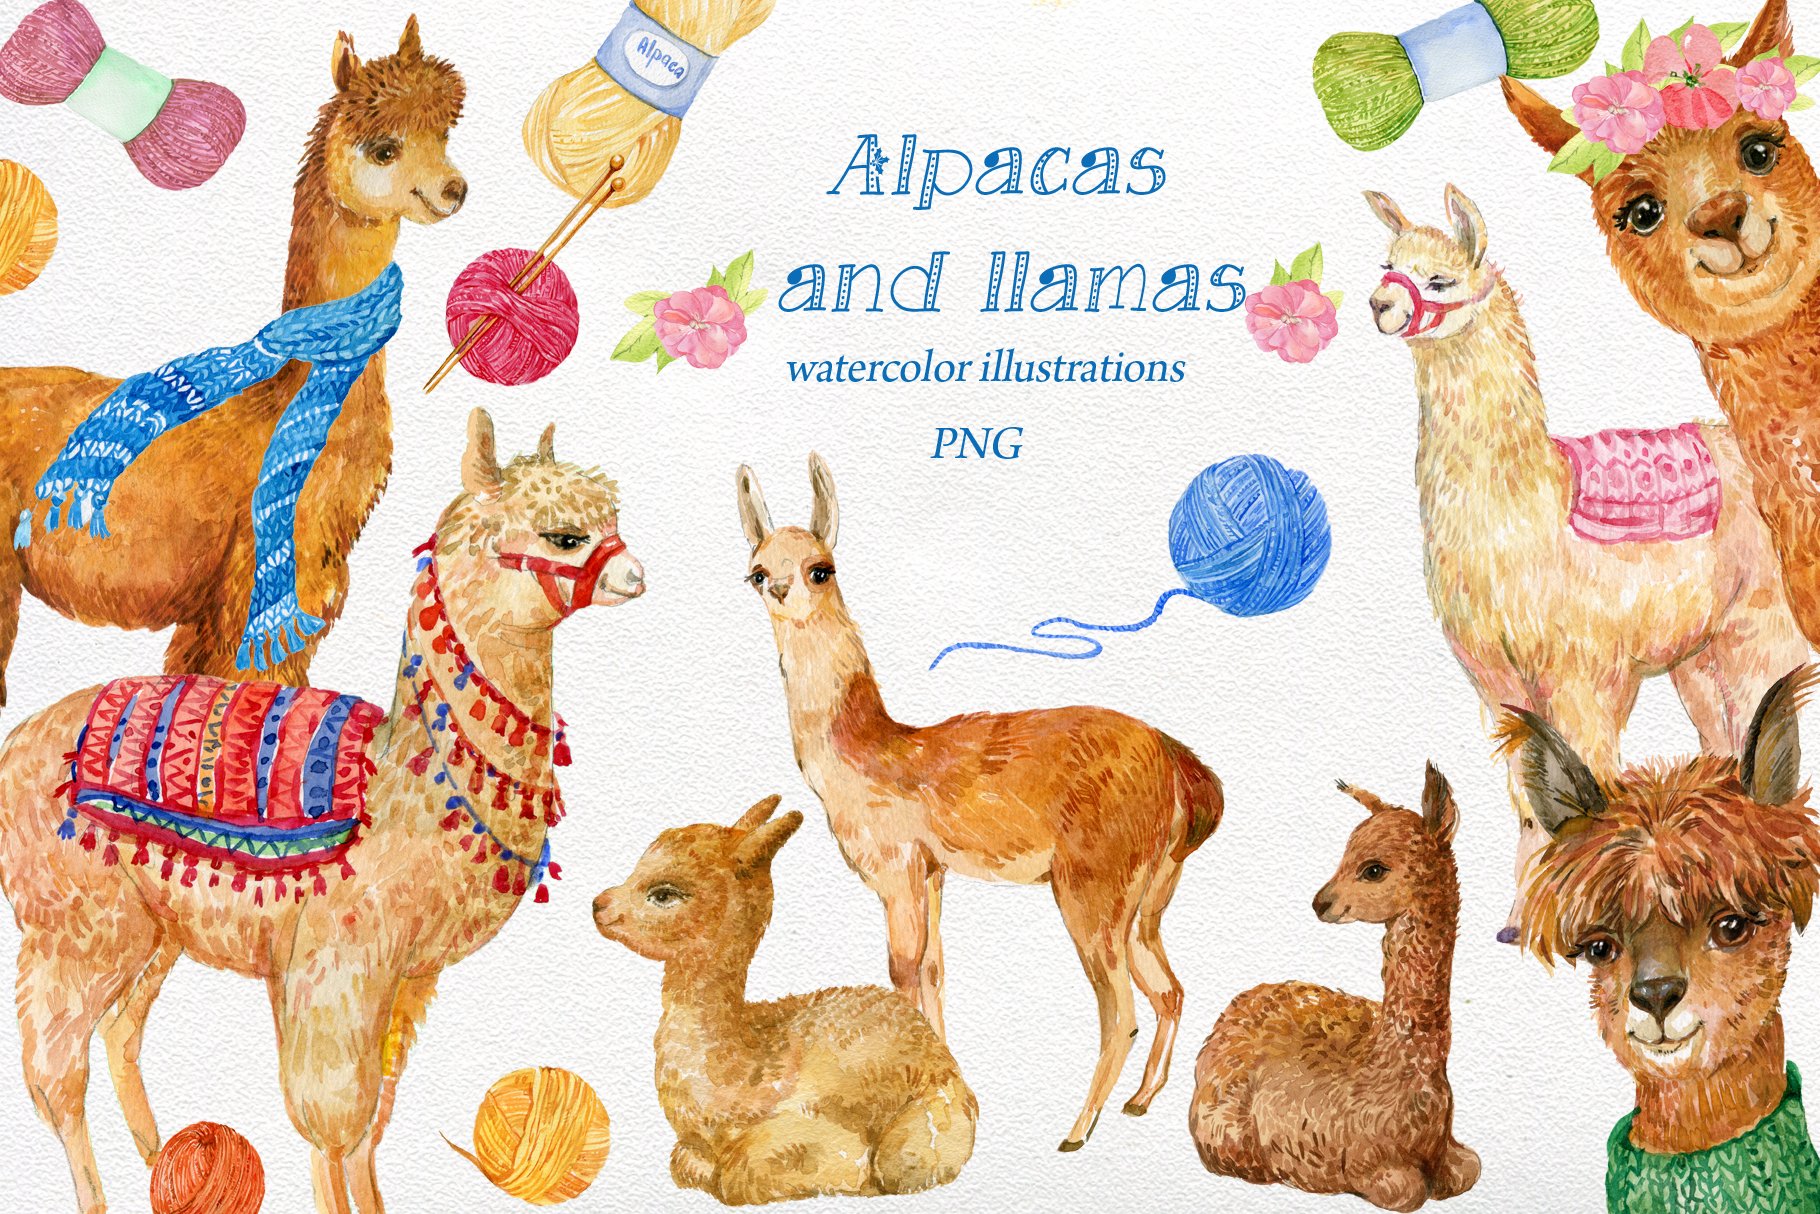 Alpacas and llamas .watercolor cover image.